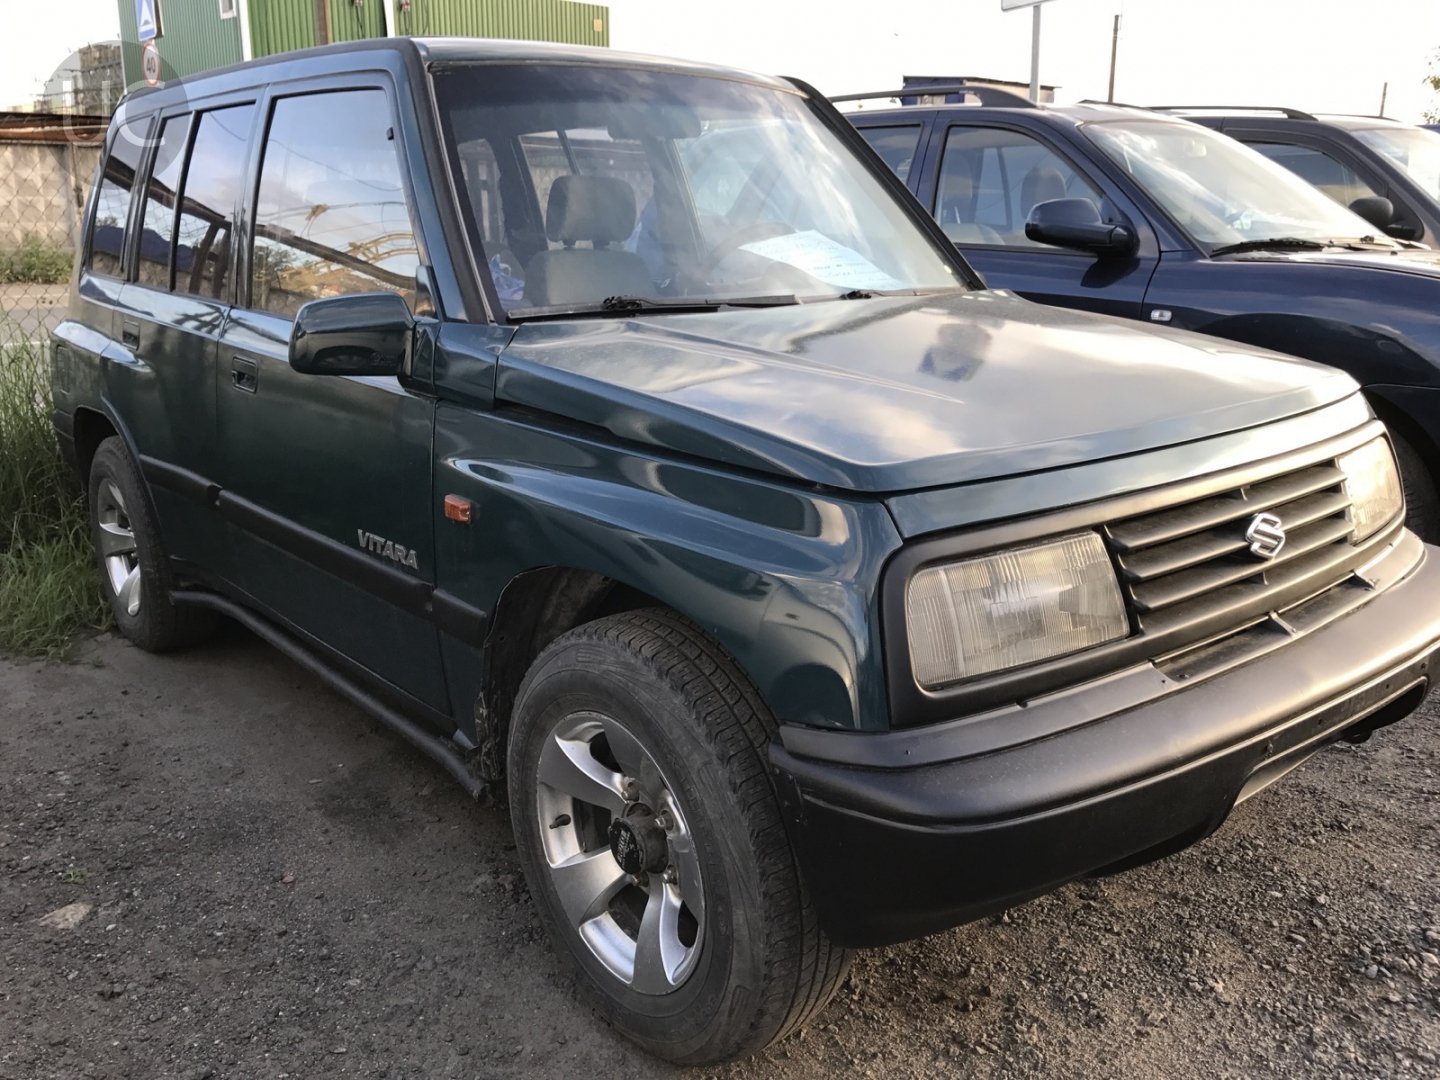 Сузуки 1993. Сузуки Витара 1993. Suzuki /Grand/ Vitara 1993. Suzuki Vitara 1993. Судзуки Витара 1993.